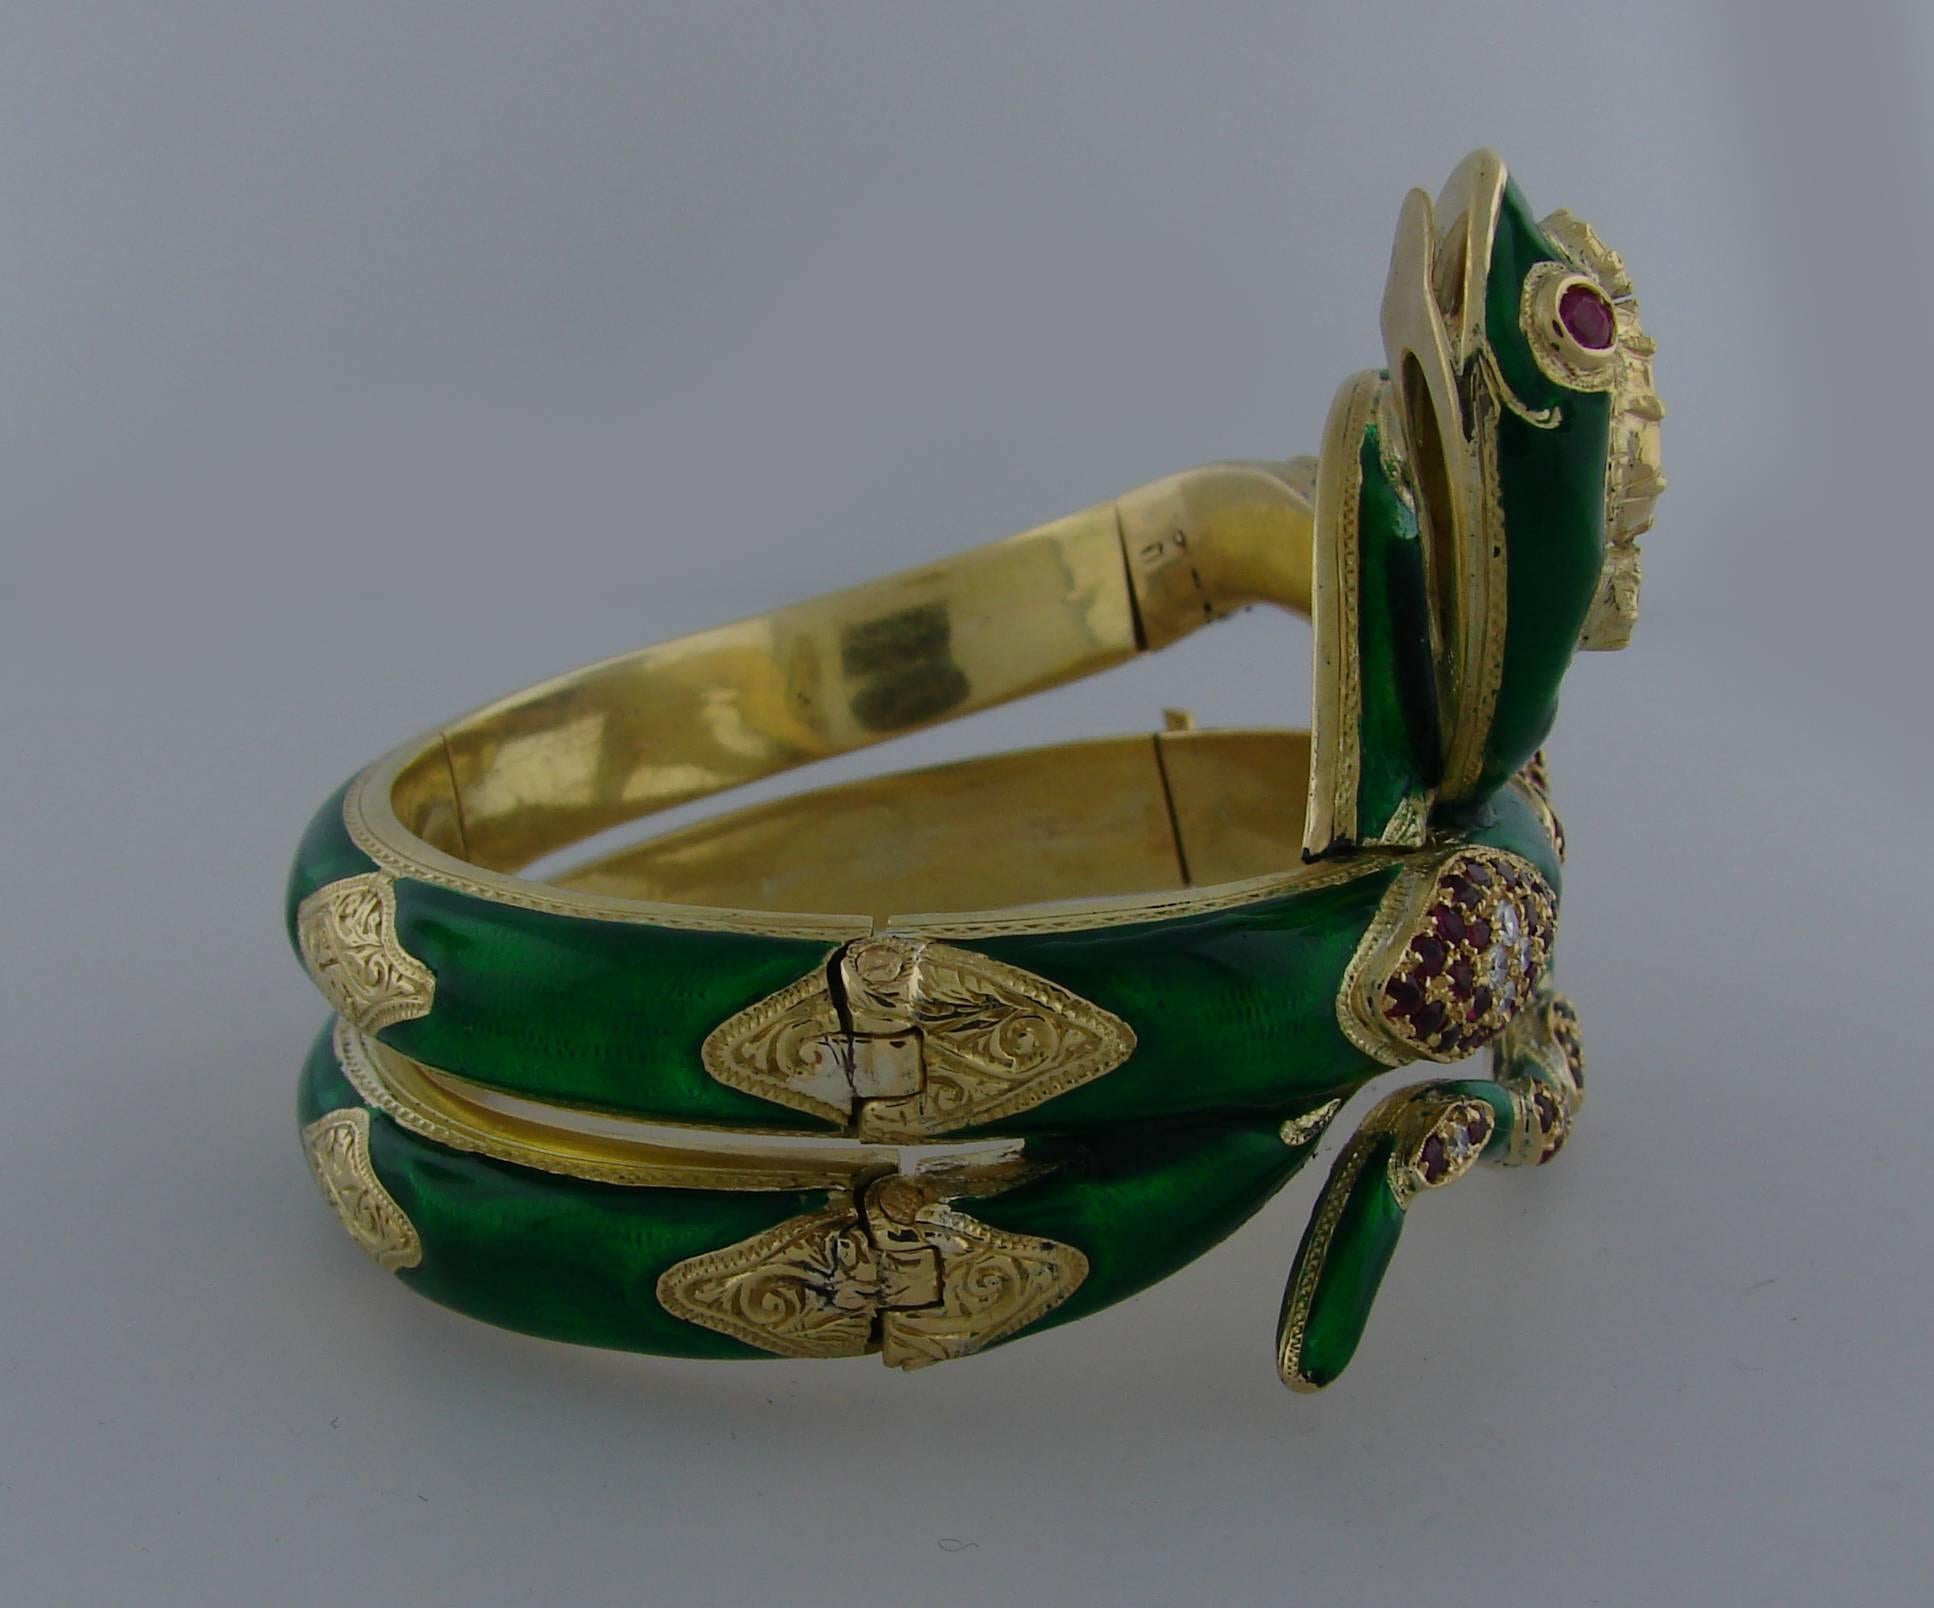  Nardi Venice Ruby Enamel Diamond Gold Snake Bangle Bracelet 1